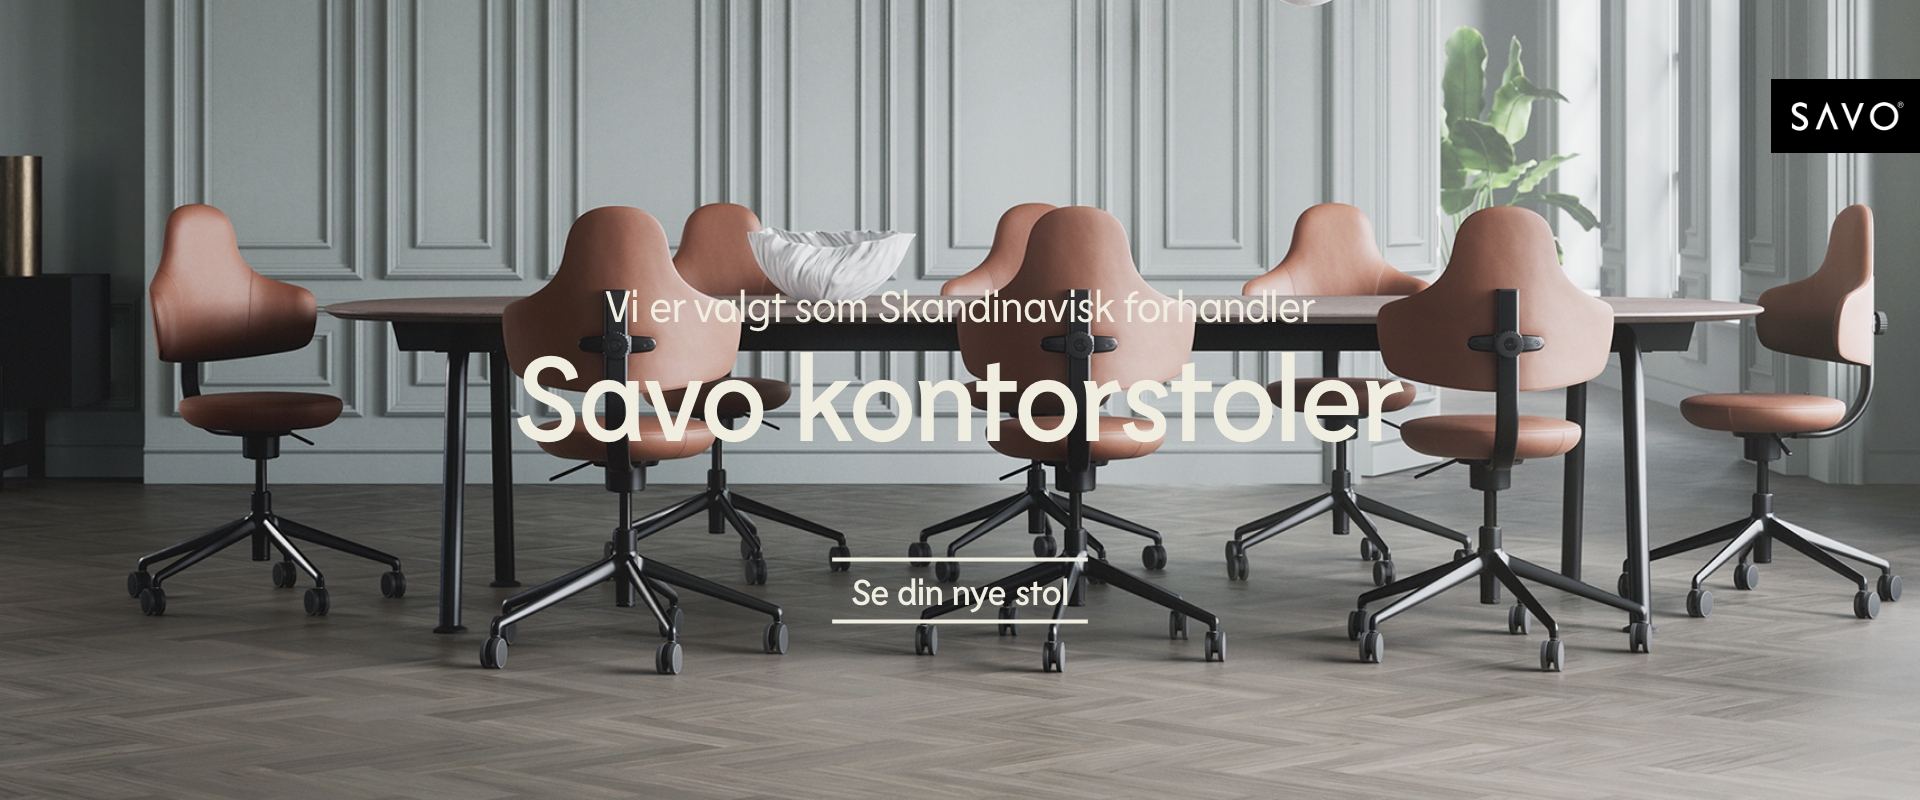 bilde som viser Savo 360 kontorstoler rundt et møtebord